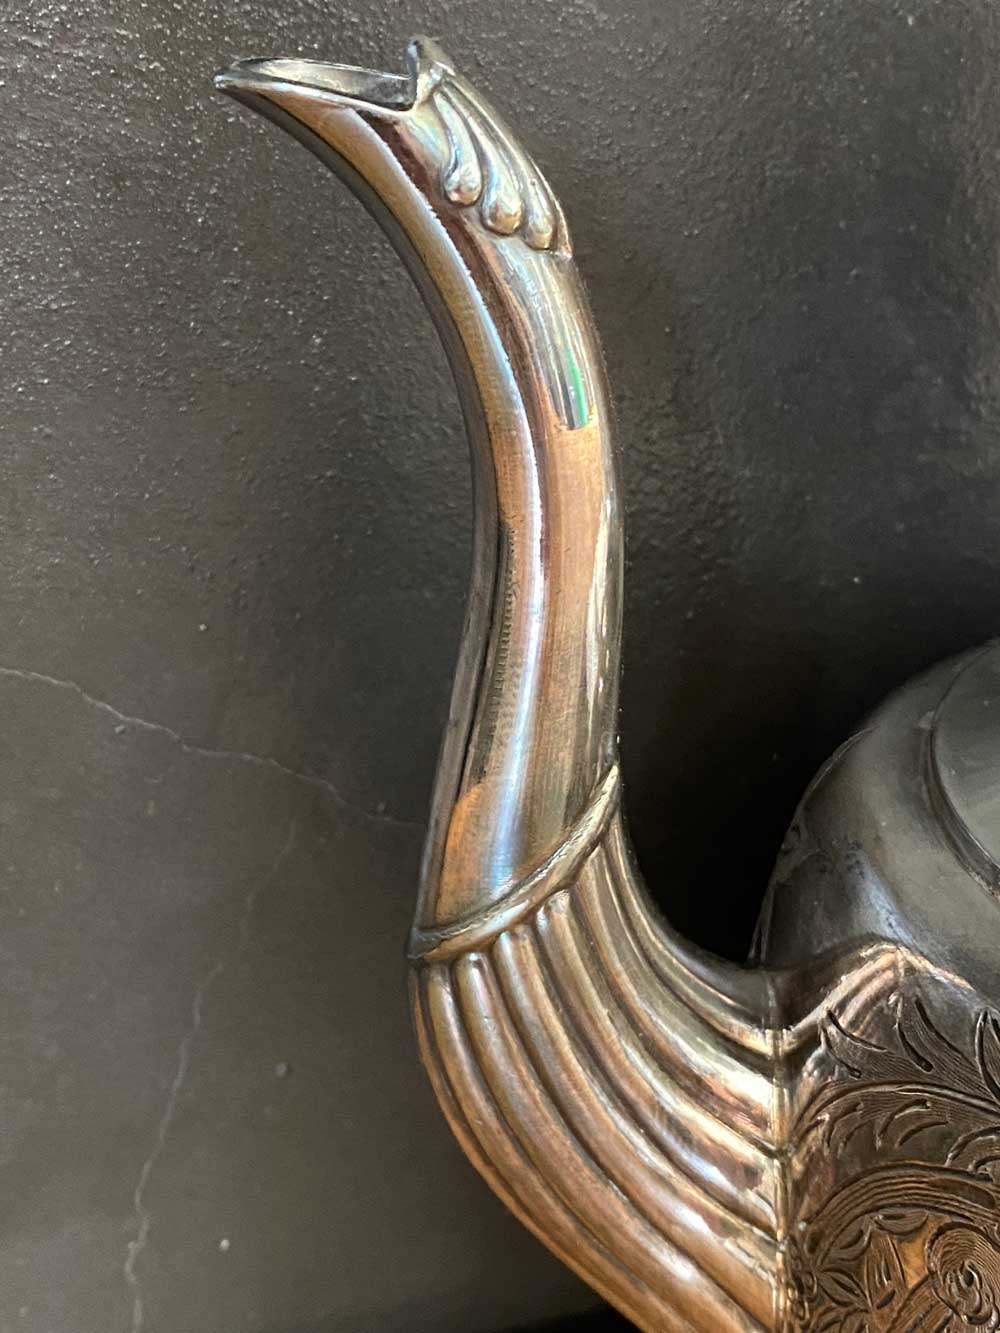 verseuse Armand Frenais métal argenté Art nouveau